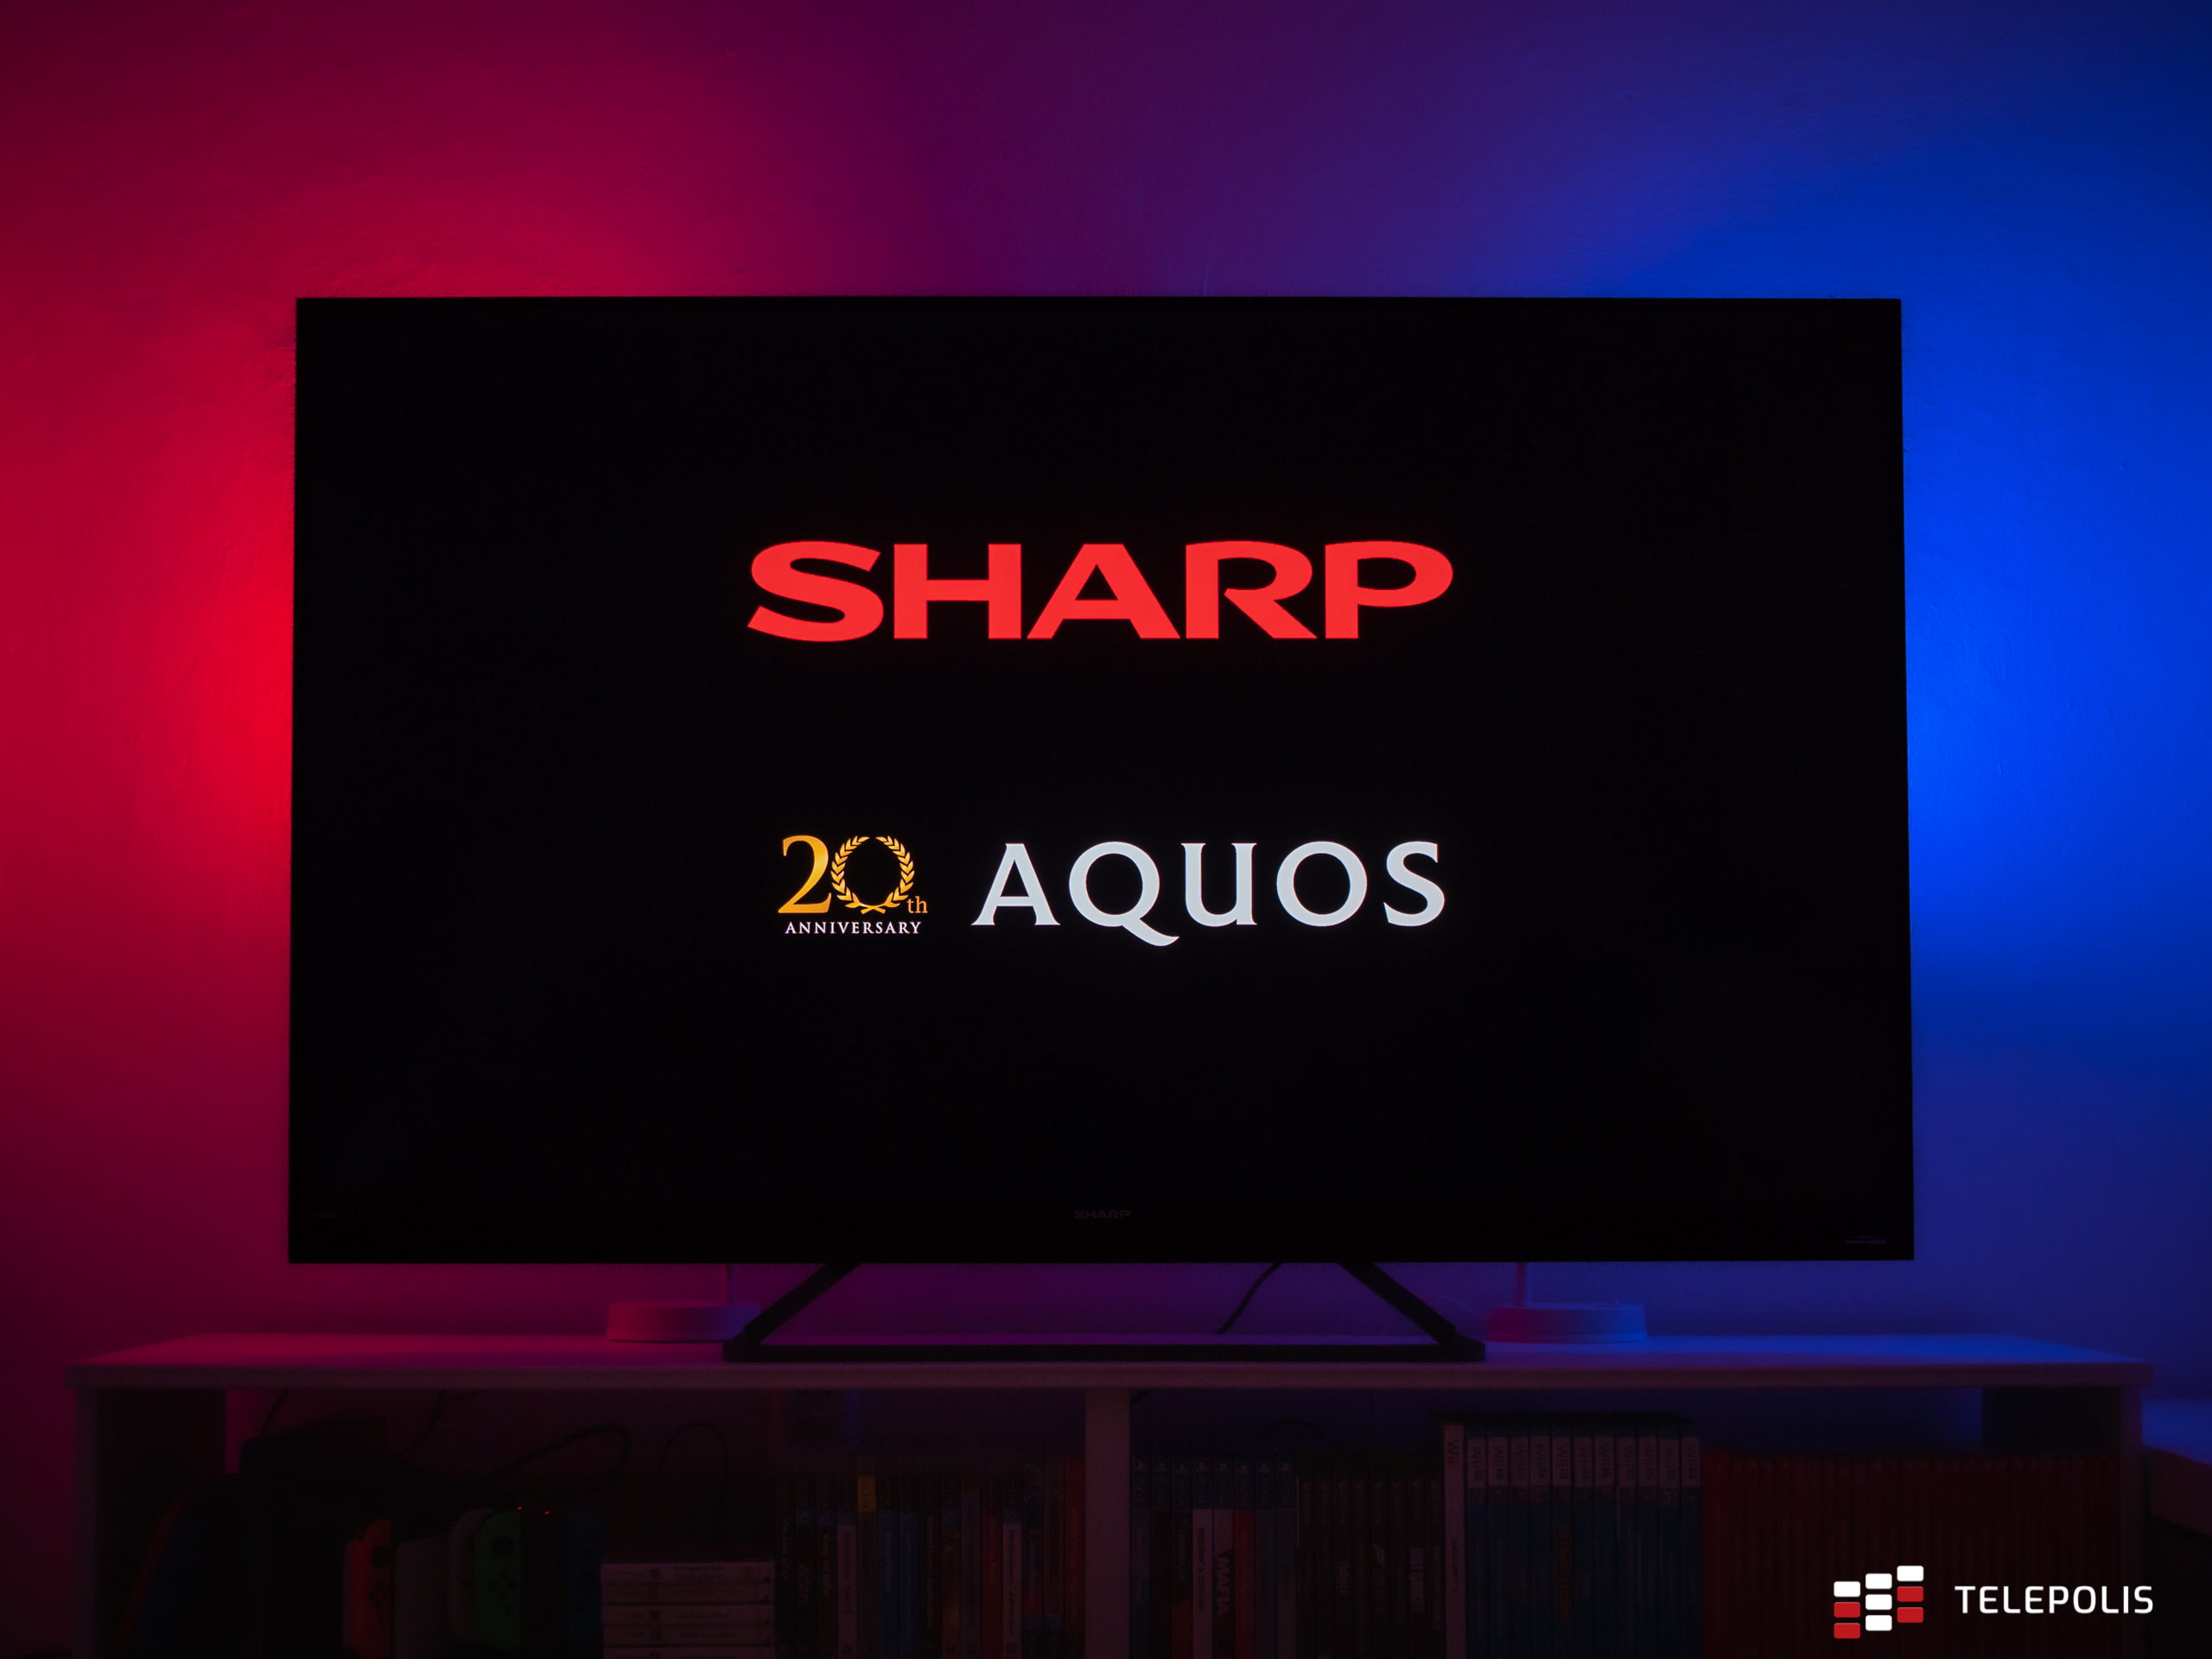 Sharp Aquos EQ6 - głęboka czerń i doskonały kontrast